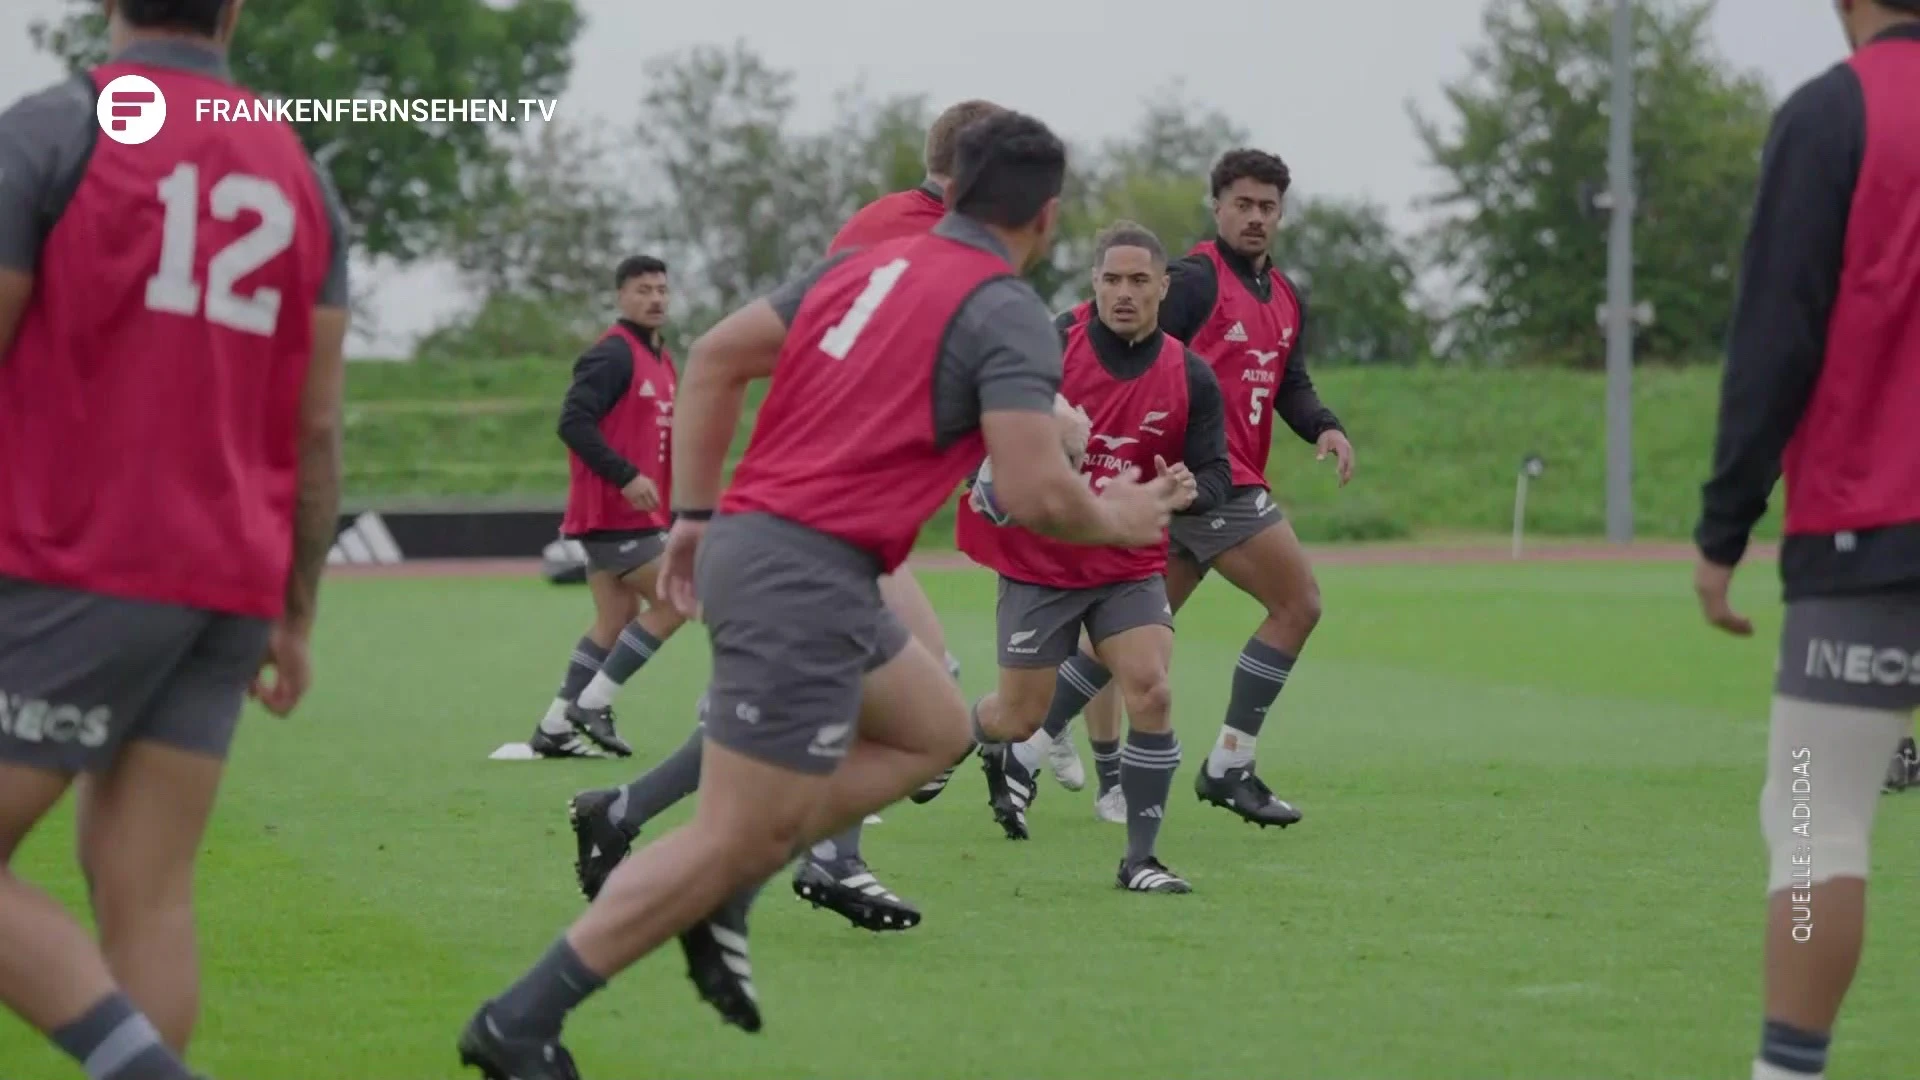 Bekannteste Rugby-Nationalmannschaft der Welt „All Blacks“ trainieren in Herzogenaurach Franken Fernsehen